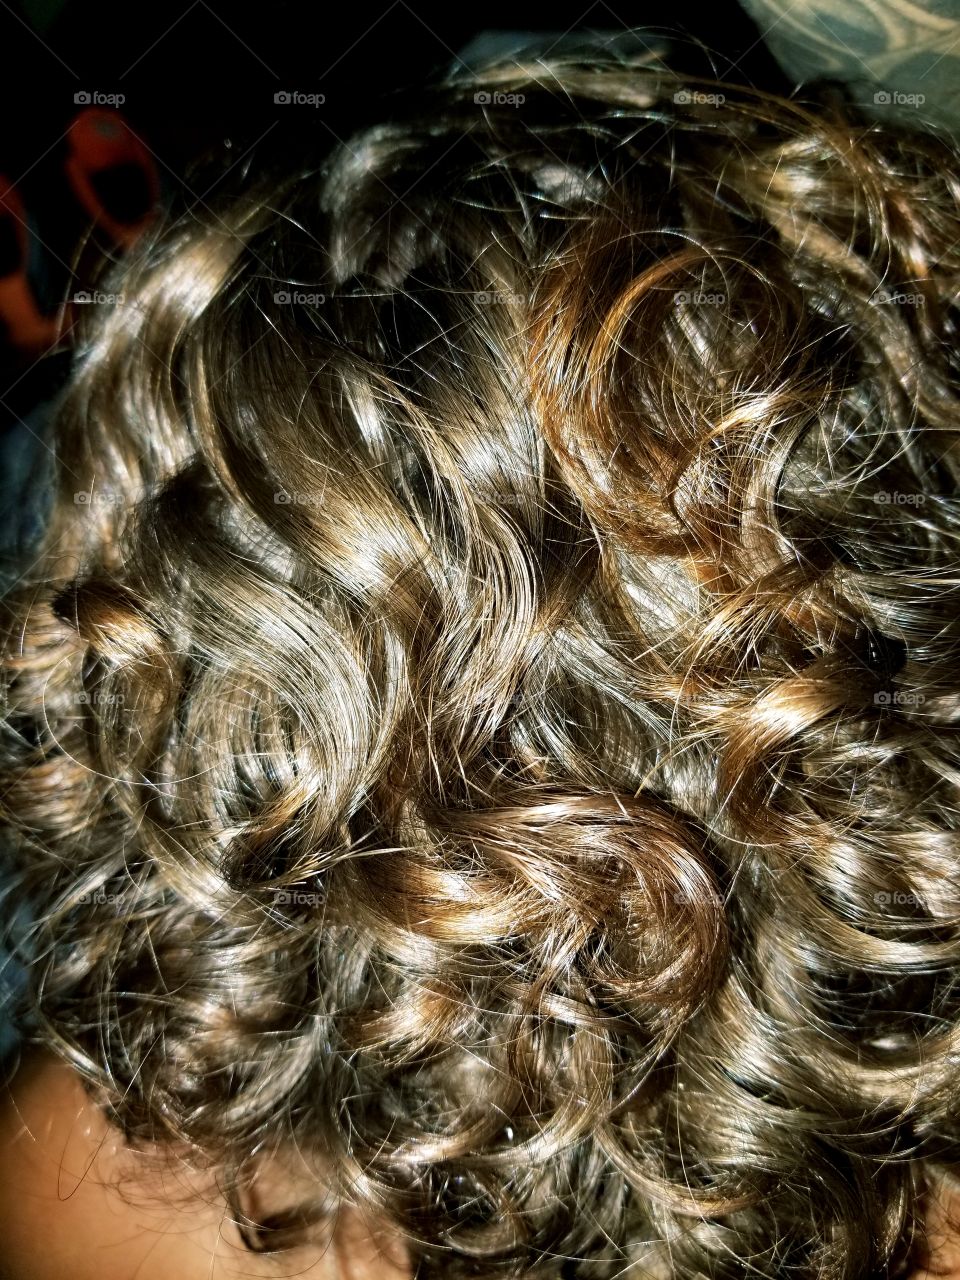 when it curls, well it curls